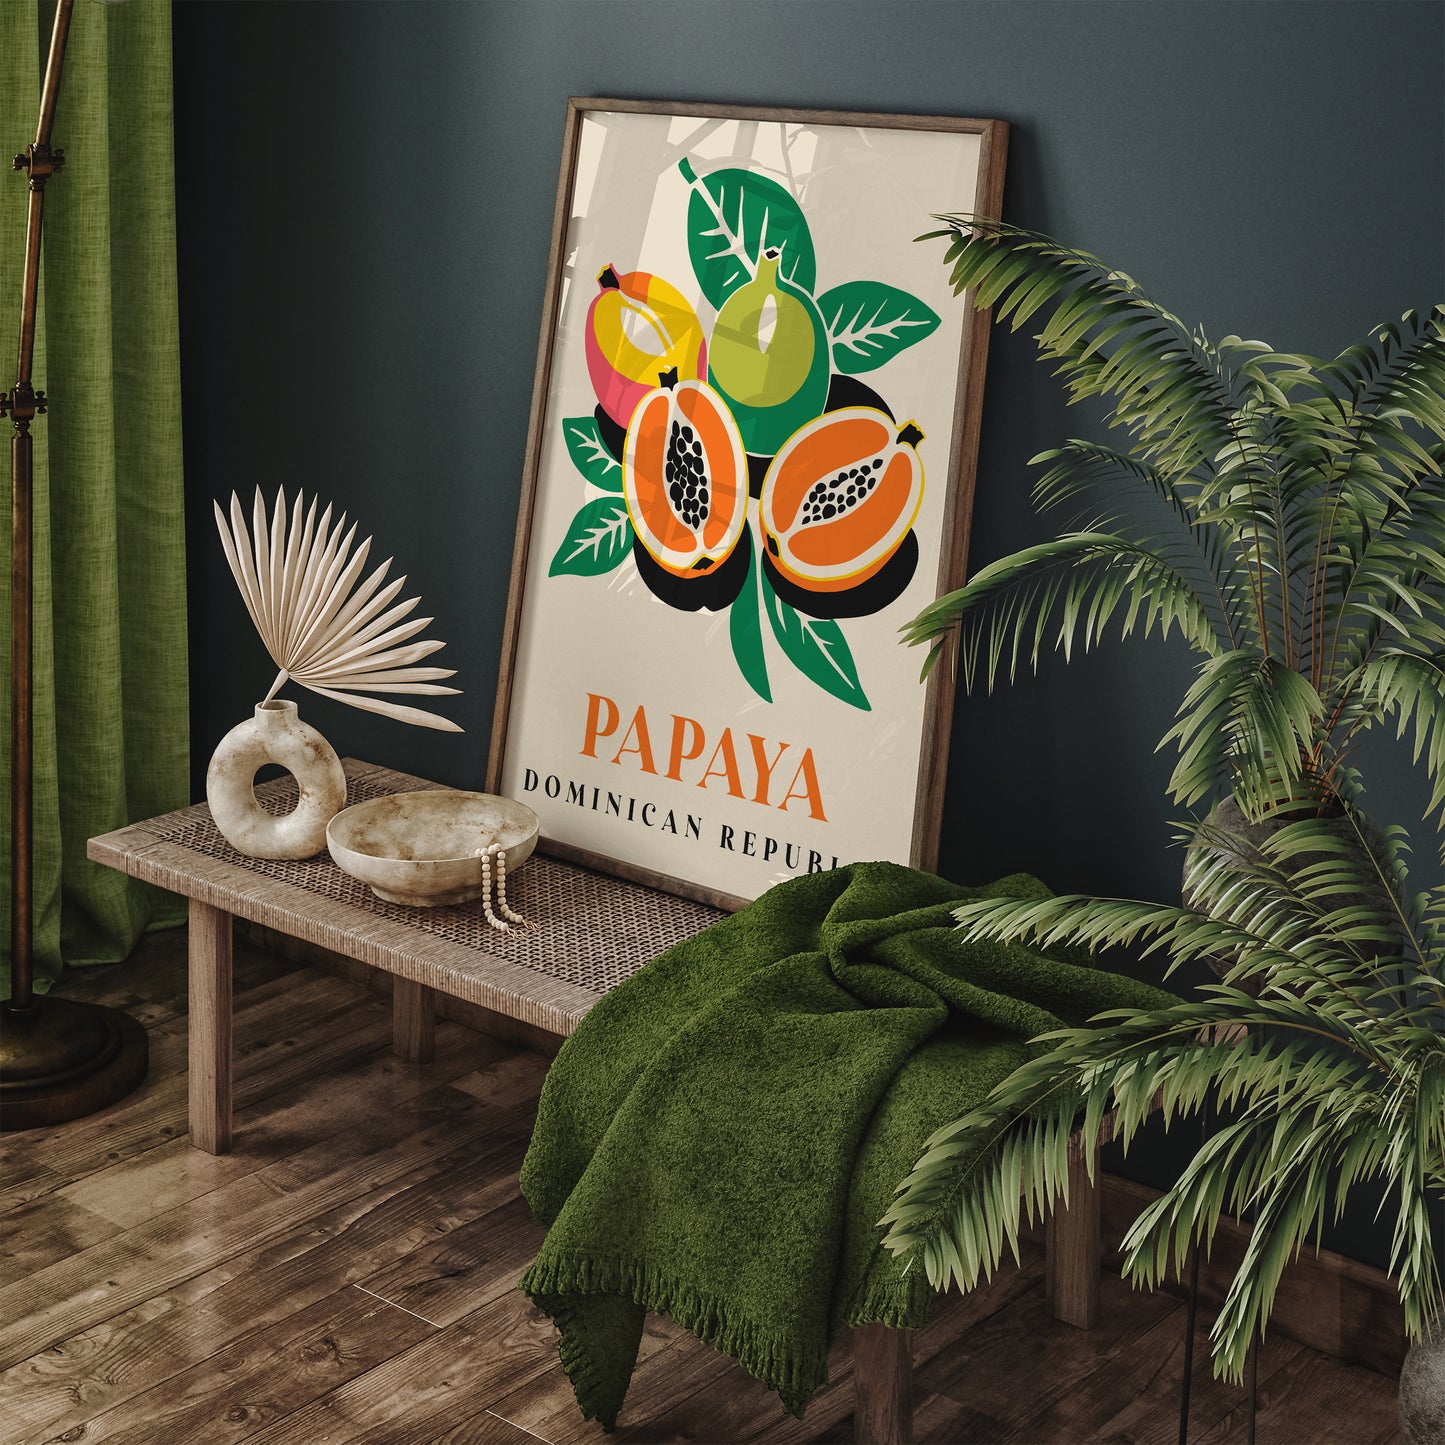 Papaya Tropical Fruit Poster